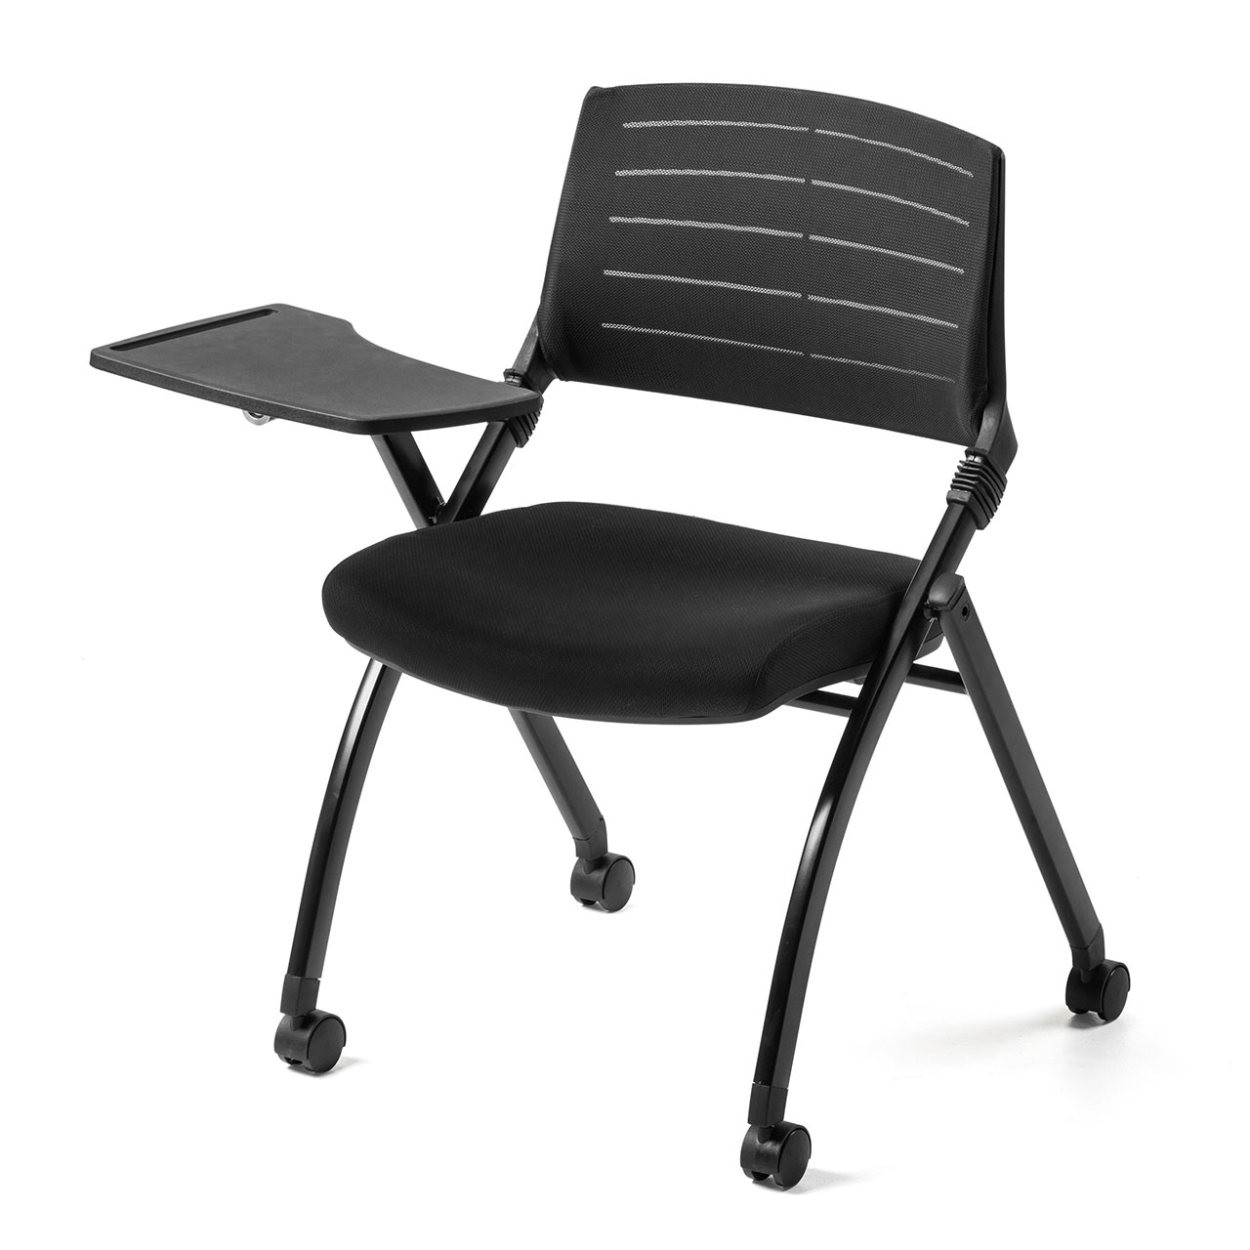 パイプ椅子 テーブル付き メモ台付き 折りたたみ椅子 会議椅子